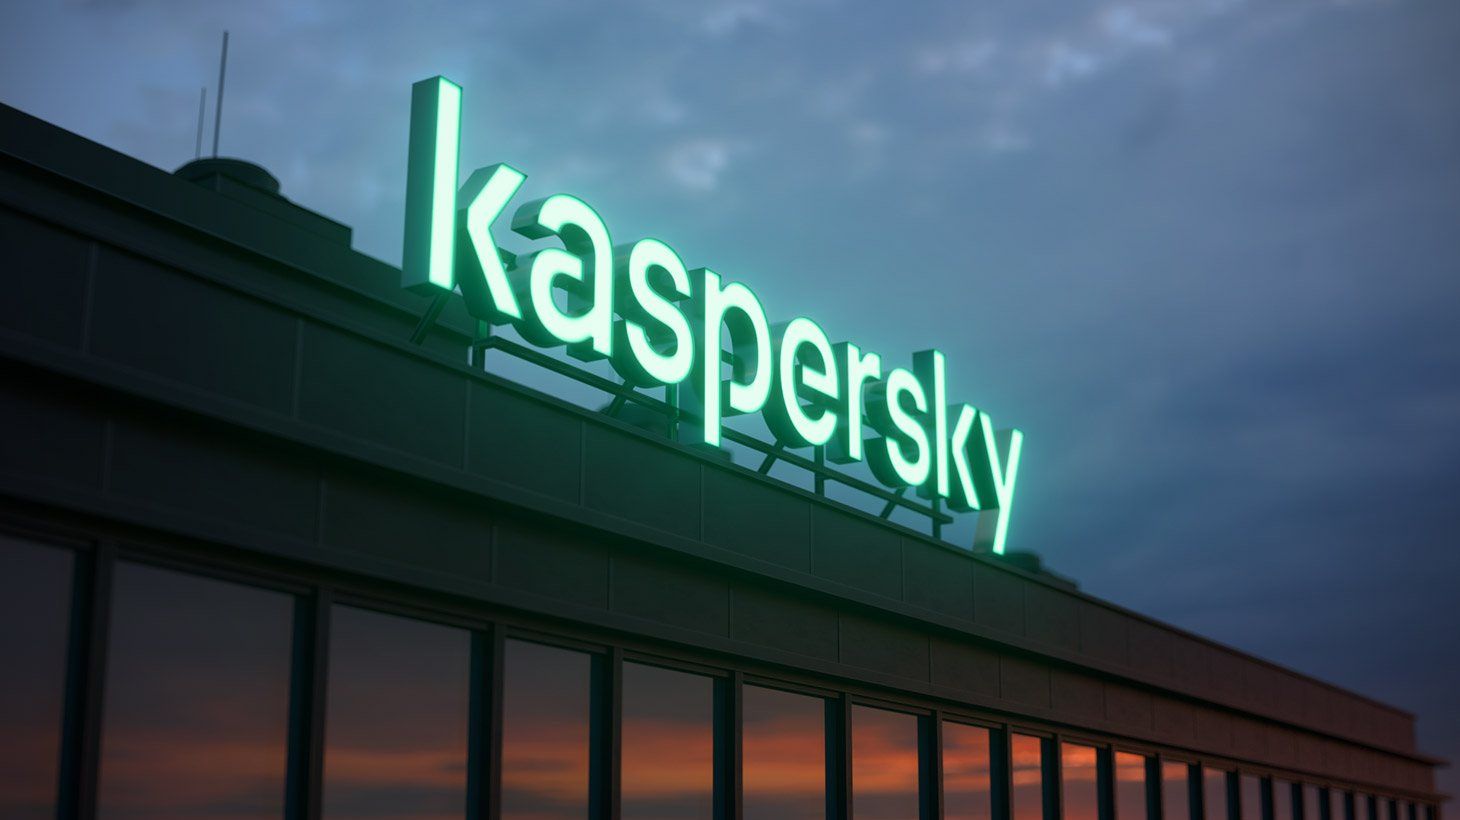 Genç güvenlik inovasyonlarının önü açılıyor: Kaspersky'den Secur'IT Cup '22 için açık çağrı